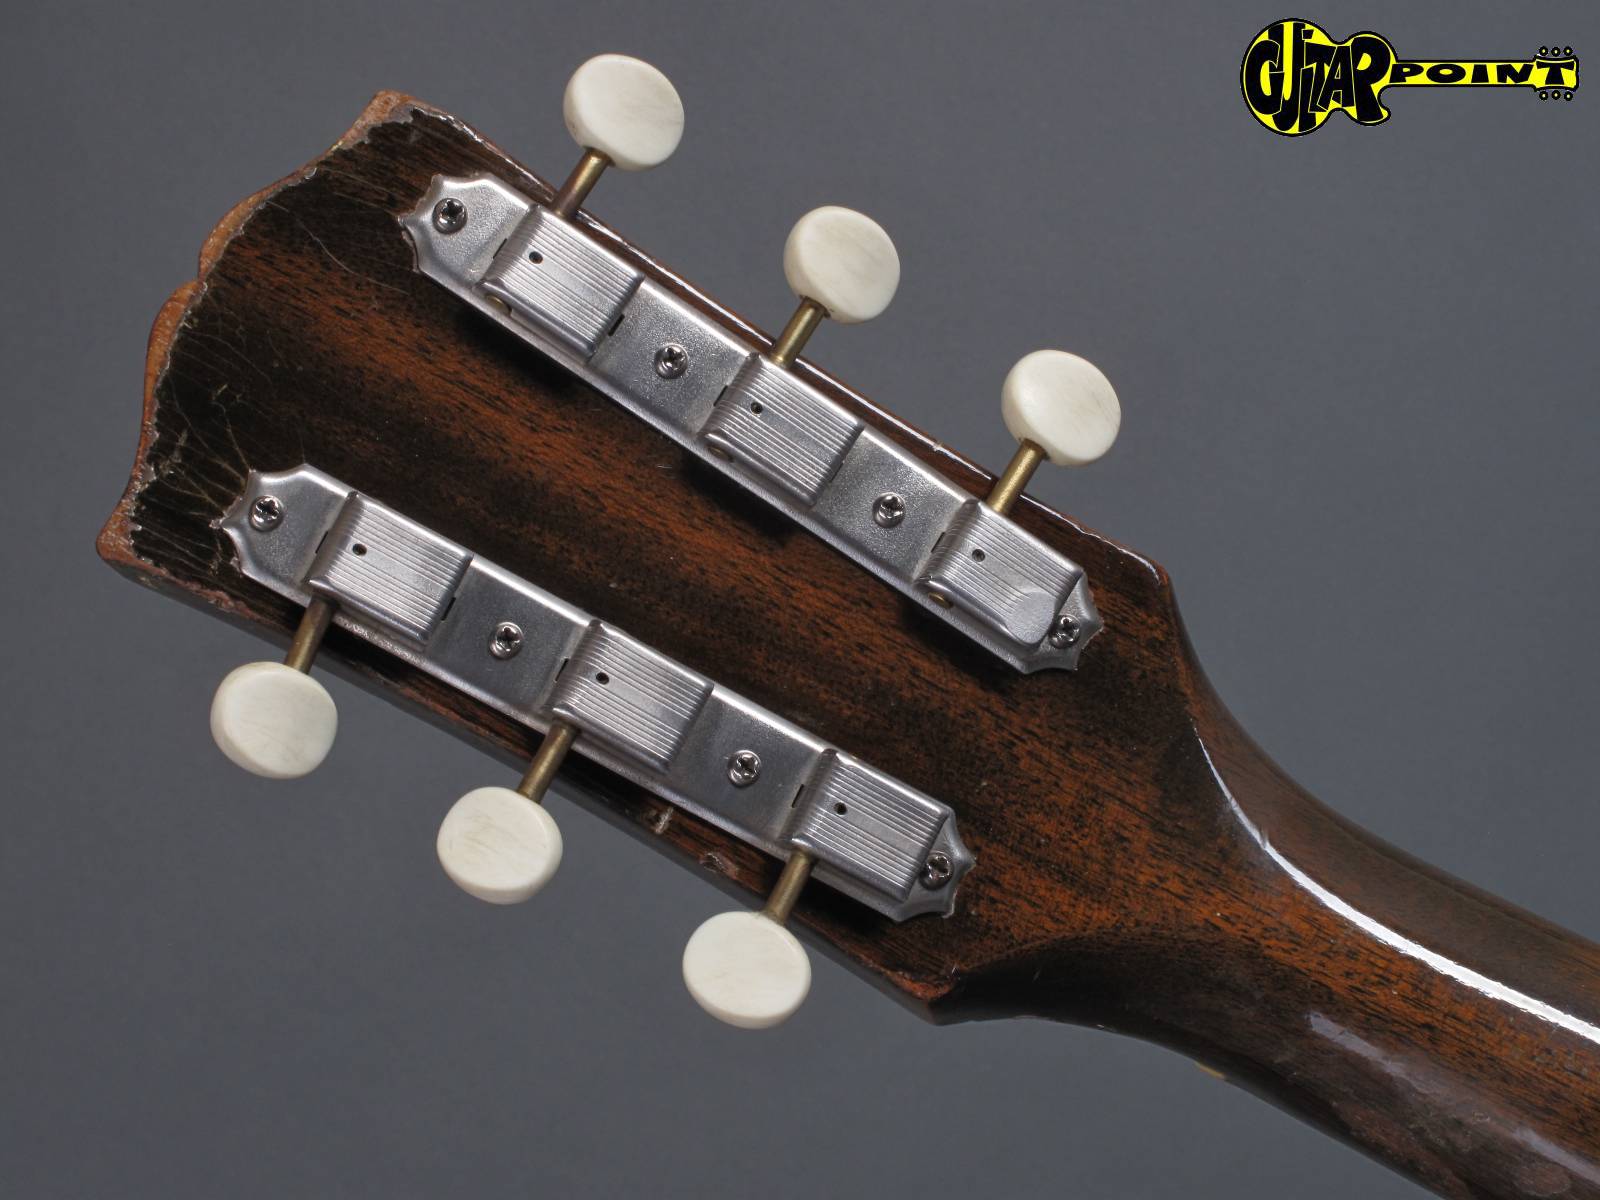 1952 Gibson ES 140 Sunburst 3 4 GuitarPoint